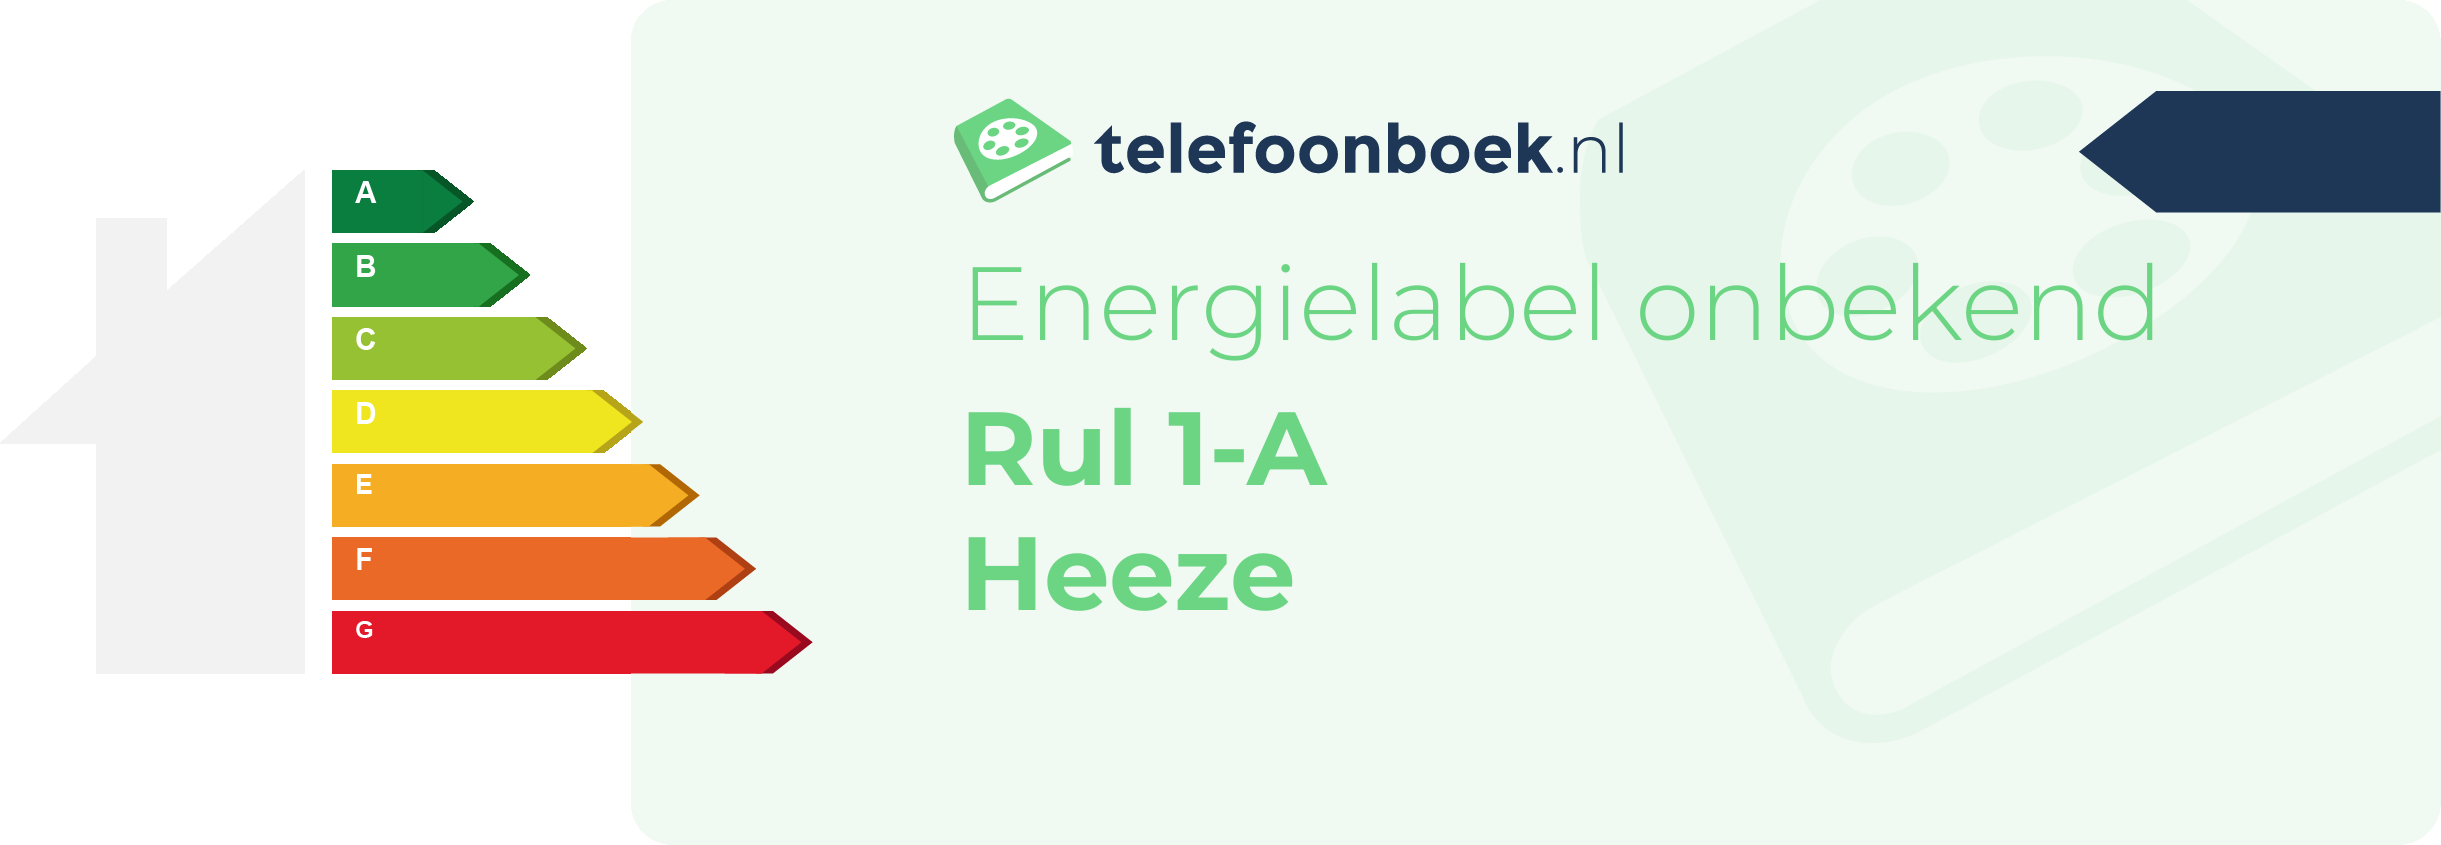 Energielabel Rul 1-A Heeze